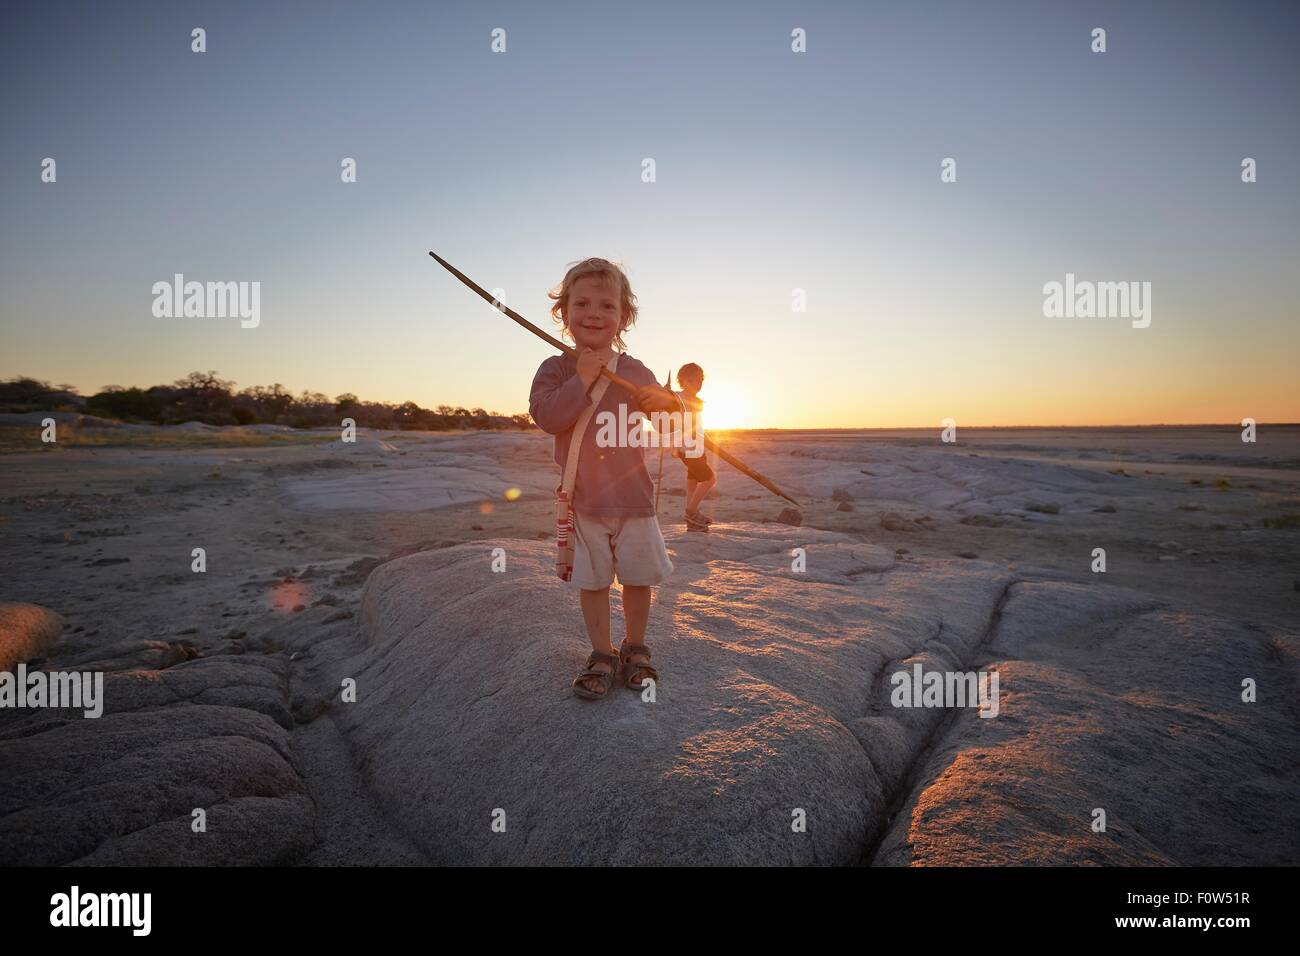 Porträt des jungen stehen auf Felsen, hält Speer, Sonnenuntergang, Gweta, Makgadikgadi, Botswana Stockfoto